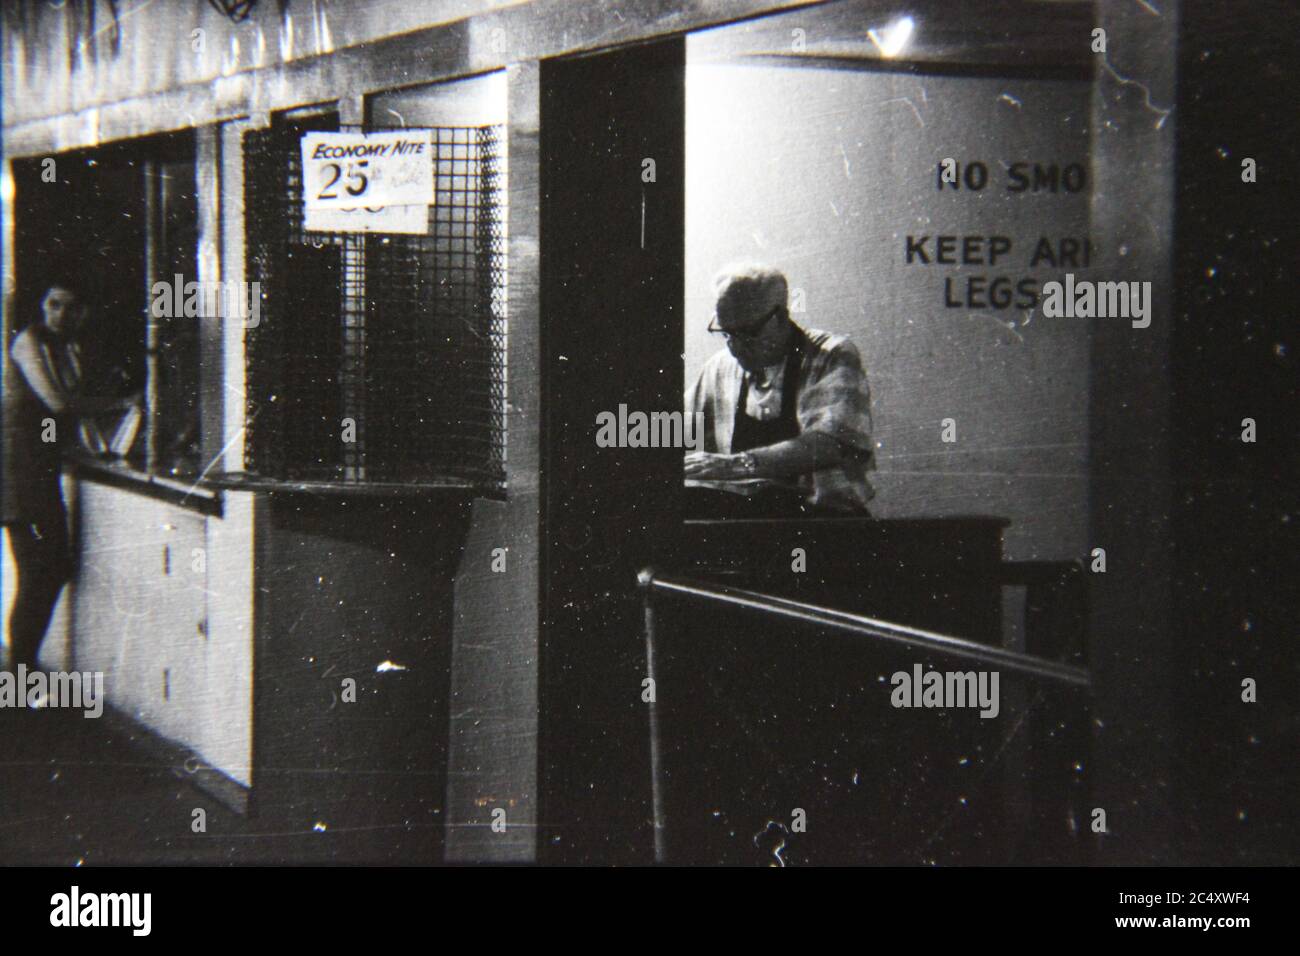 Bella fotografia in bianco e nero d'epoca degli anni '70 di un lavoratore carnoso in mezzo a una depressione estrema e angoscia mentale. Foto Stock